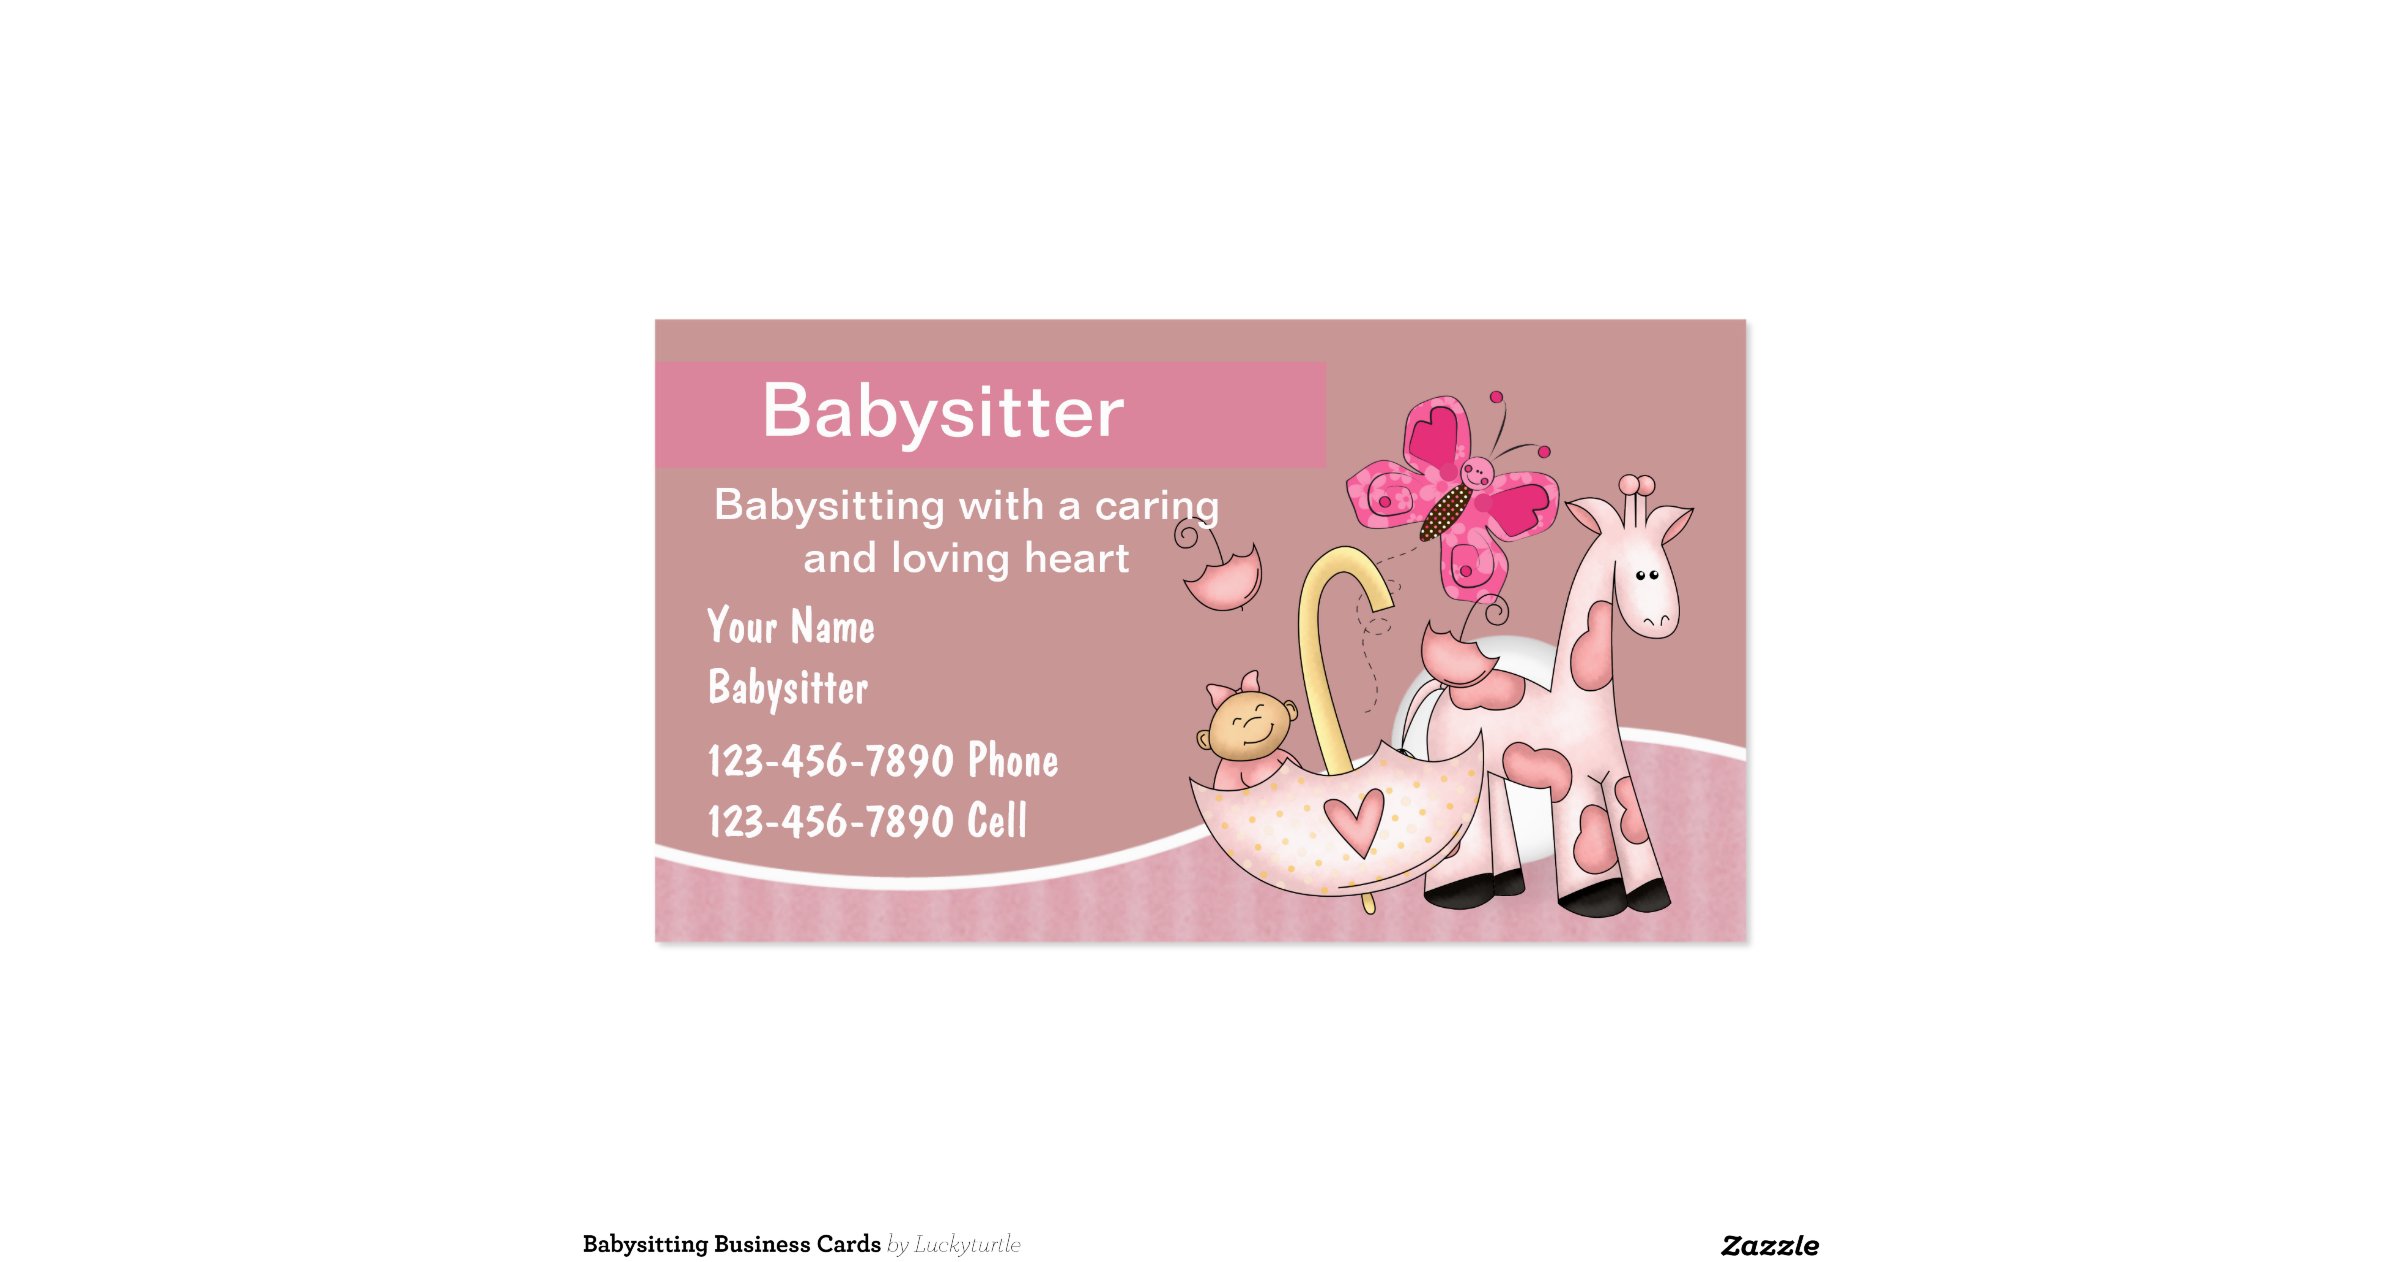 babysitting-business-cards-r7f031bd303f14b2e8f66b63cc9dbefb2-i579t